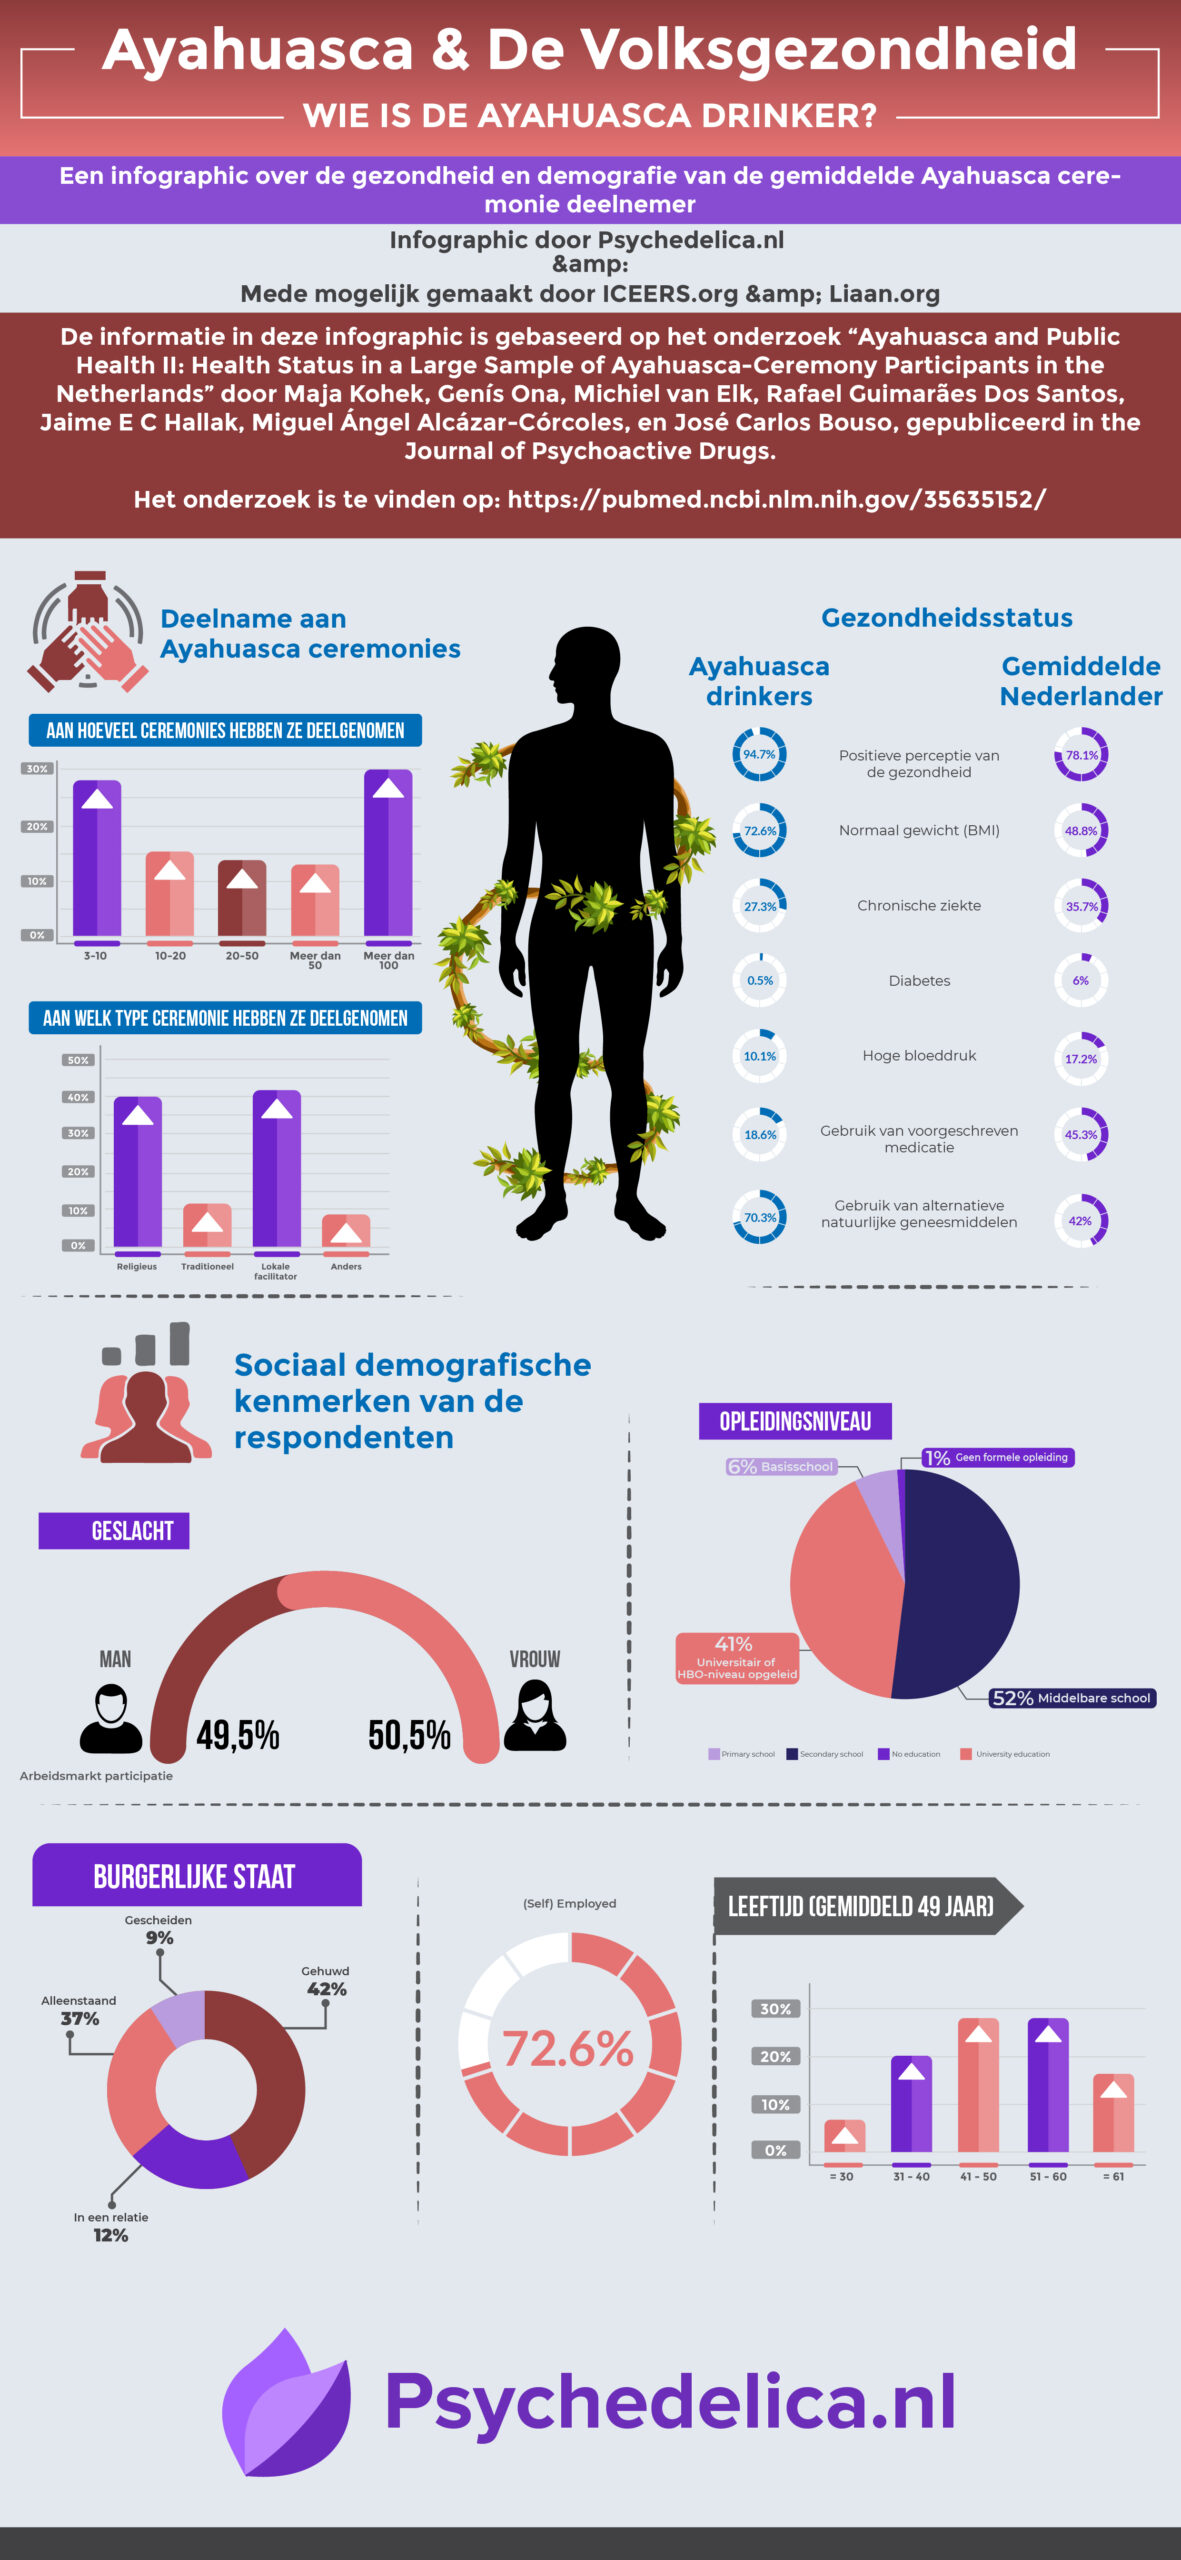 infographic-ayahuasca-volksgezondheid-nederland-wetenschap